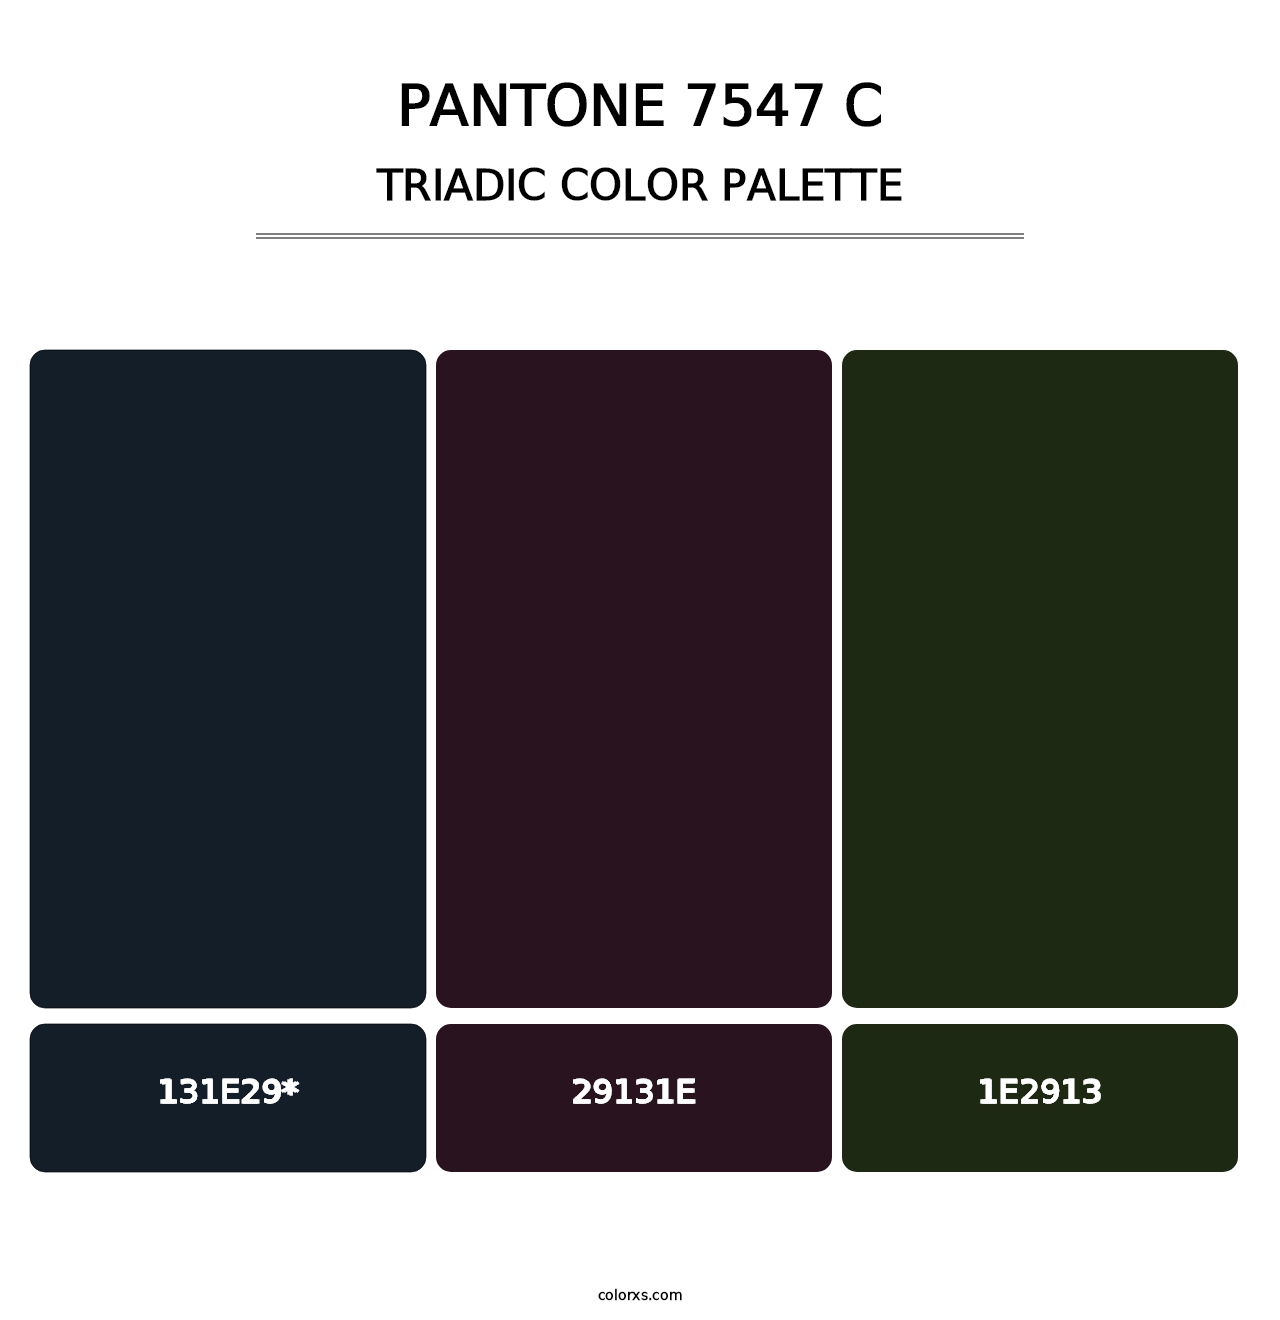 PANTONE 7547 C - Triadic Color Palette